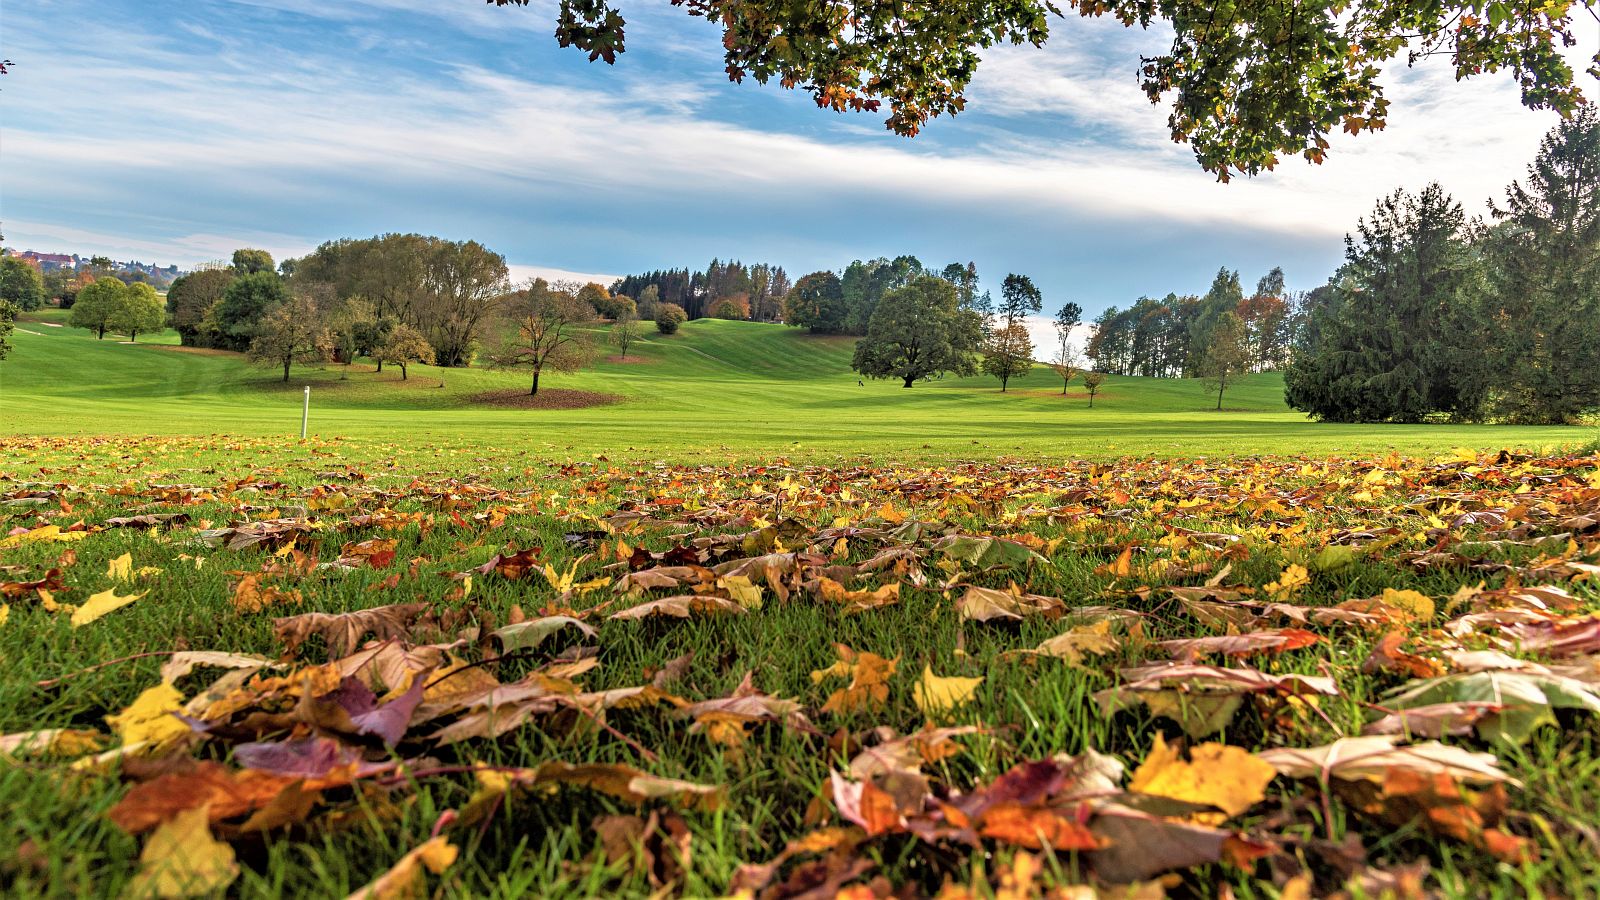 Wenn die Blätter fallen, ist die Golf-Saison noch längst nicht vorbei. Herbst-Golf hat einen ganz besonderen Reiz. © Quellness & Golf Resort Bad Griesbach/Pedagrafie